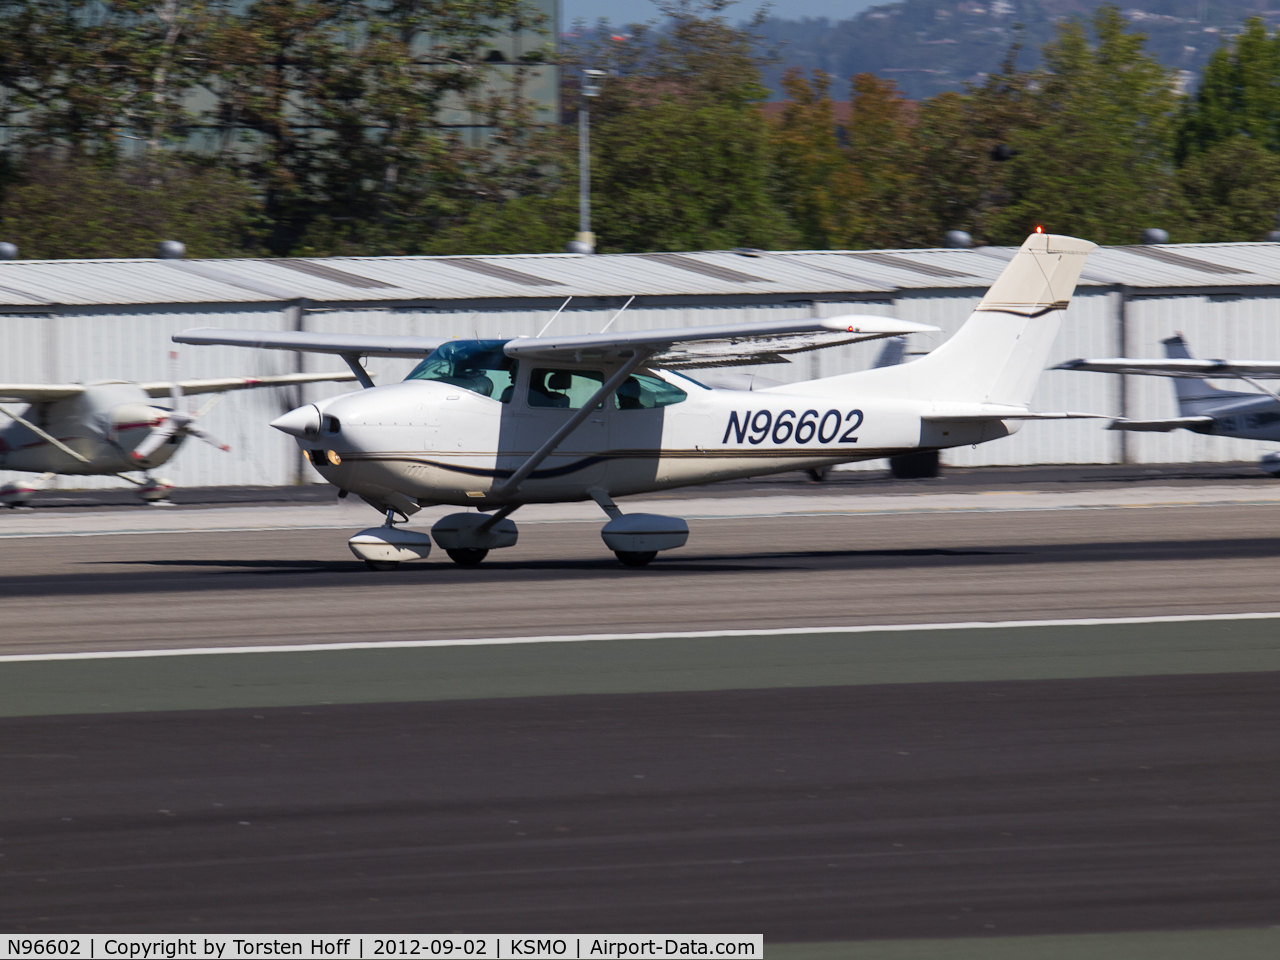 N96602, 1979 Cessna 182Q Skylane C/N 18266778, N96602 departing from RWY 21